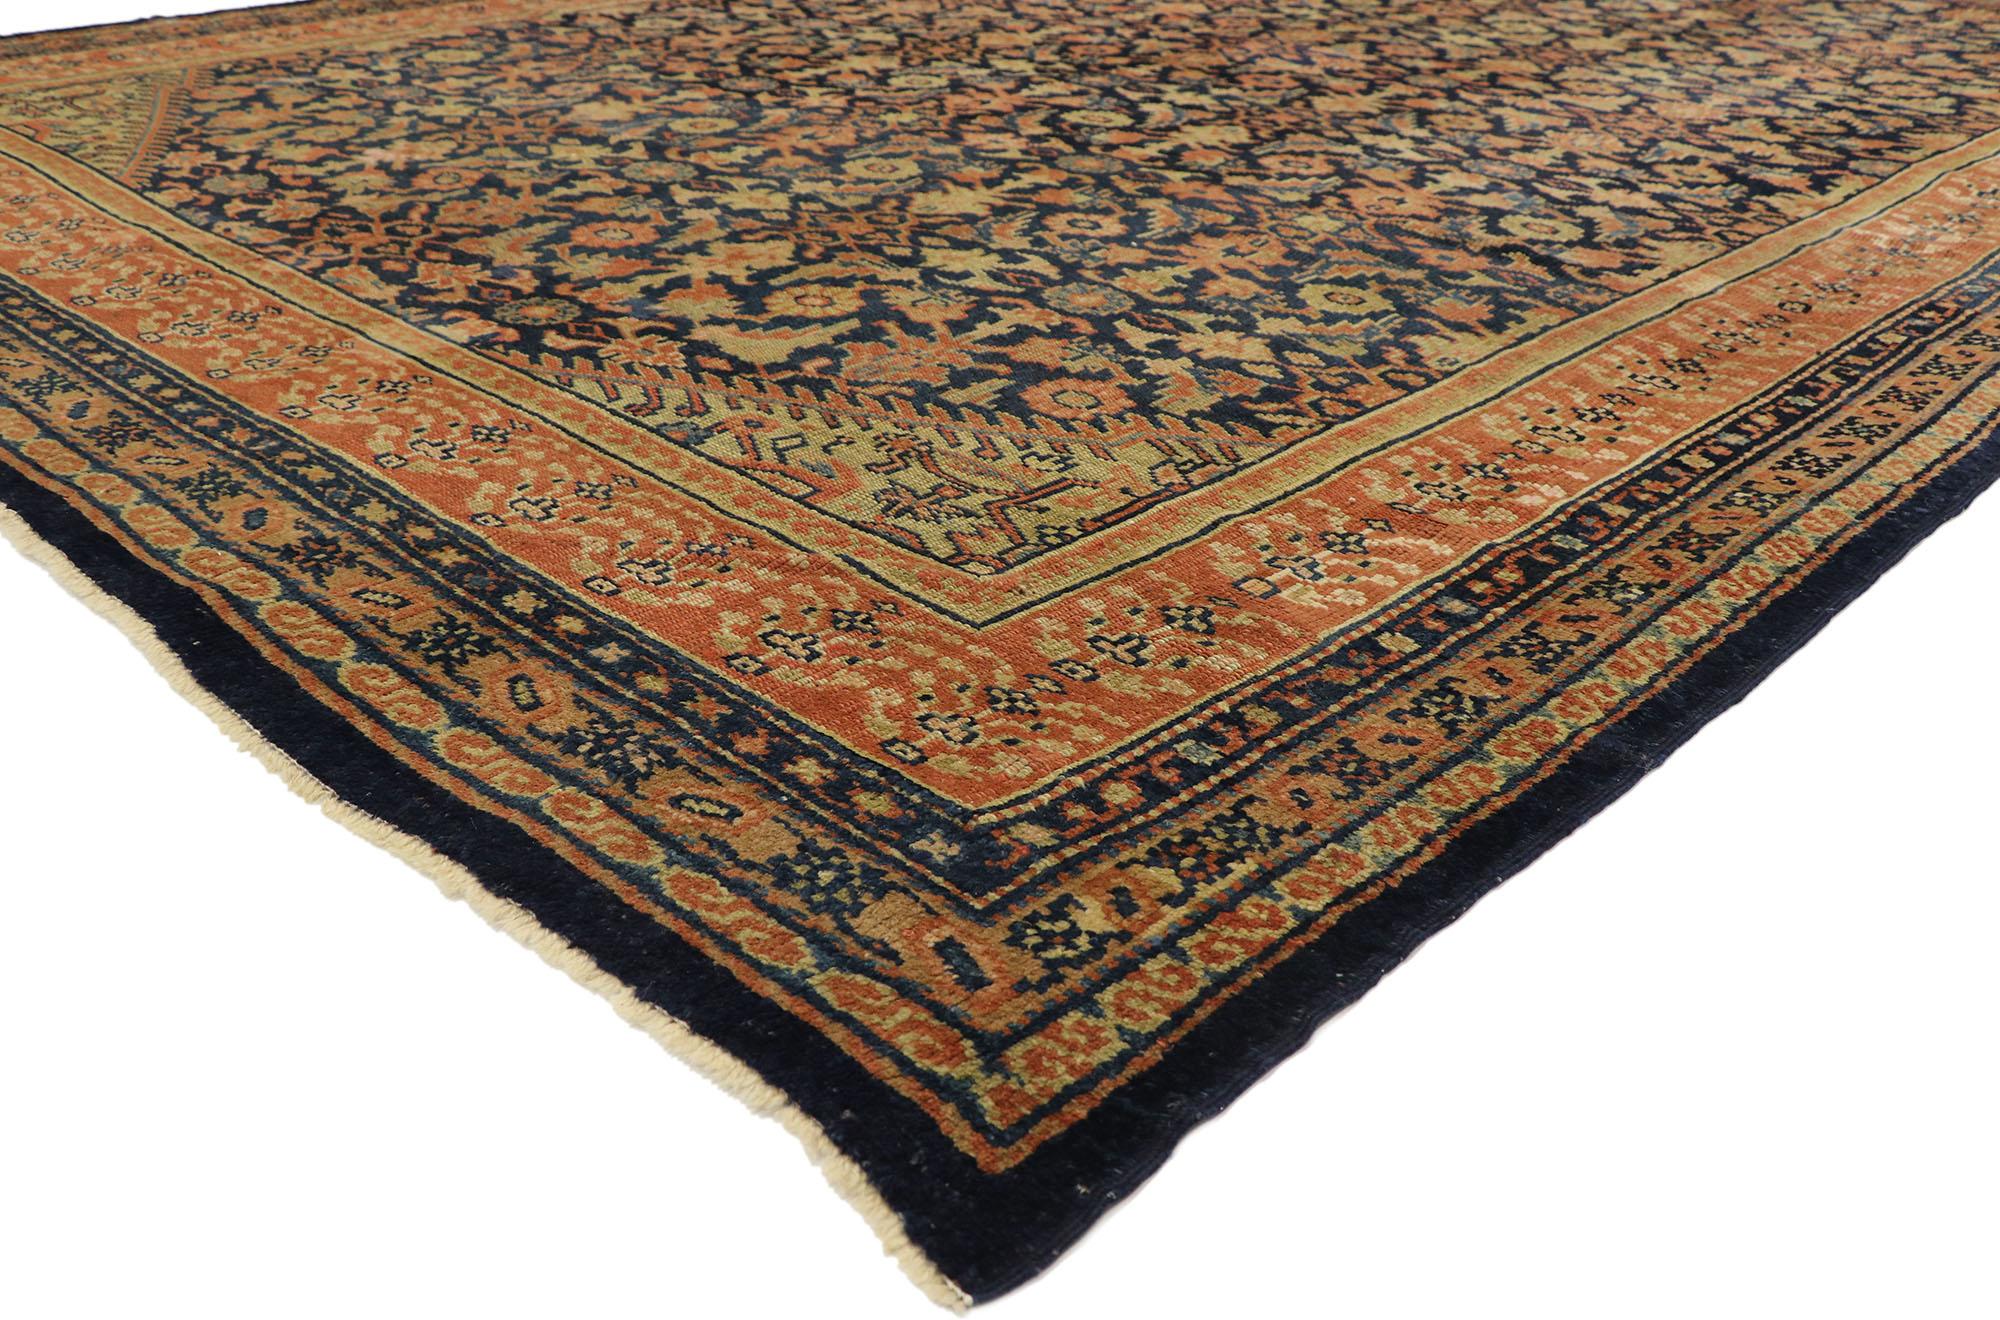 51634, tapis persan kurde de la fin du XIXe siècle, de style traditionnel anglais. Avec son élégance intemporelle et son charme nostalgique, ce tapis persan kurde ancien en laine nouée à la main s'intègre parfaitement aux intérieurs modernes,